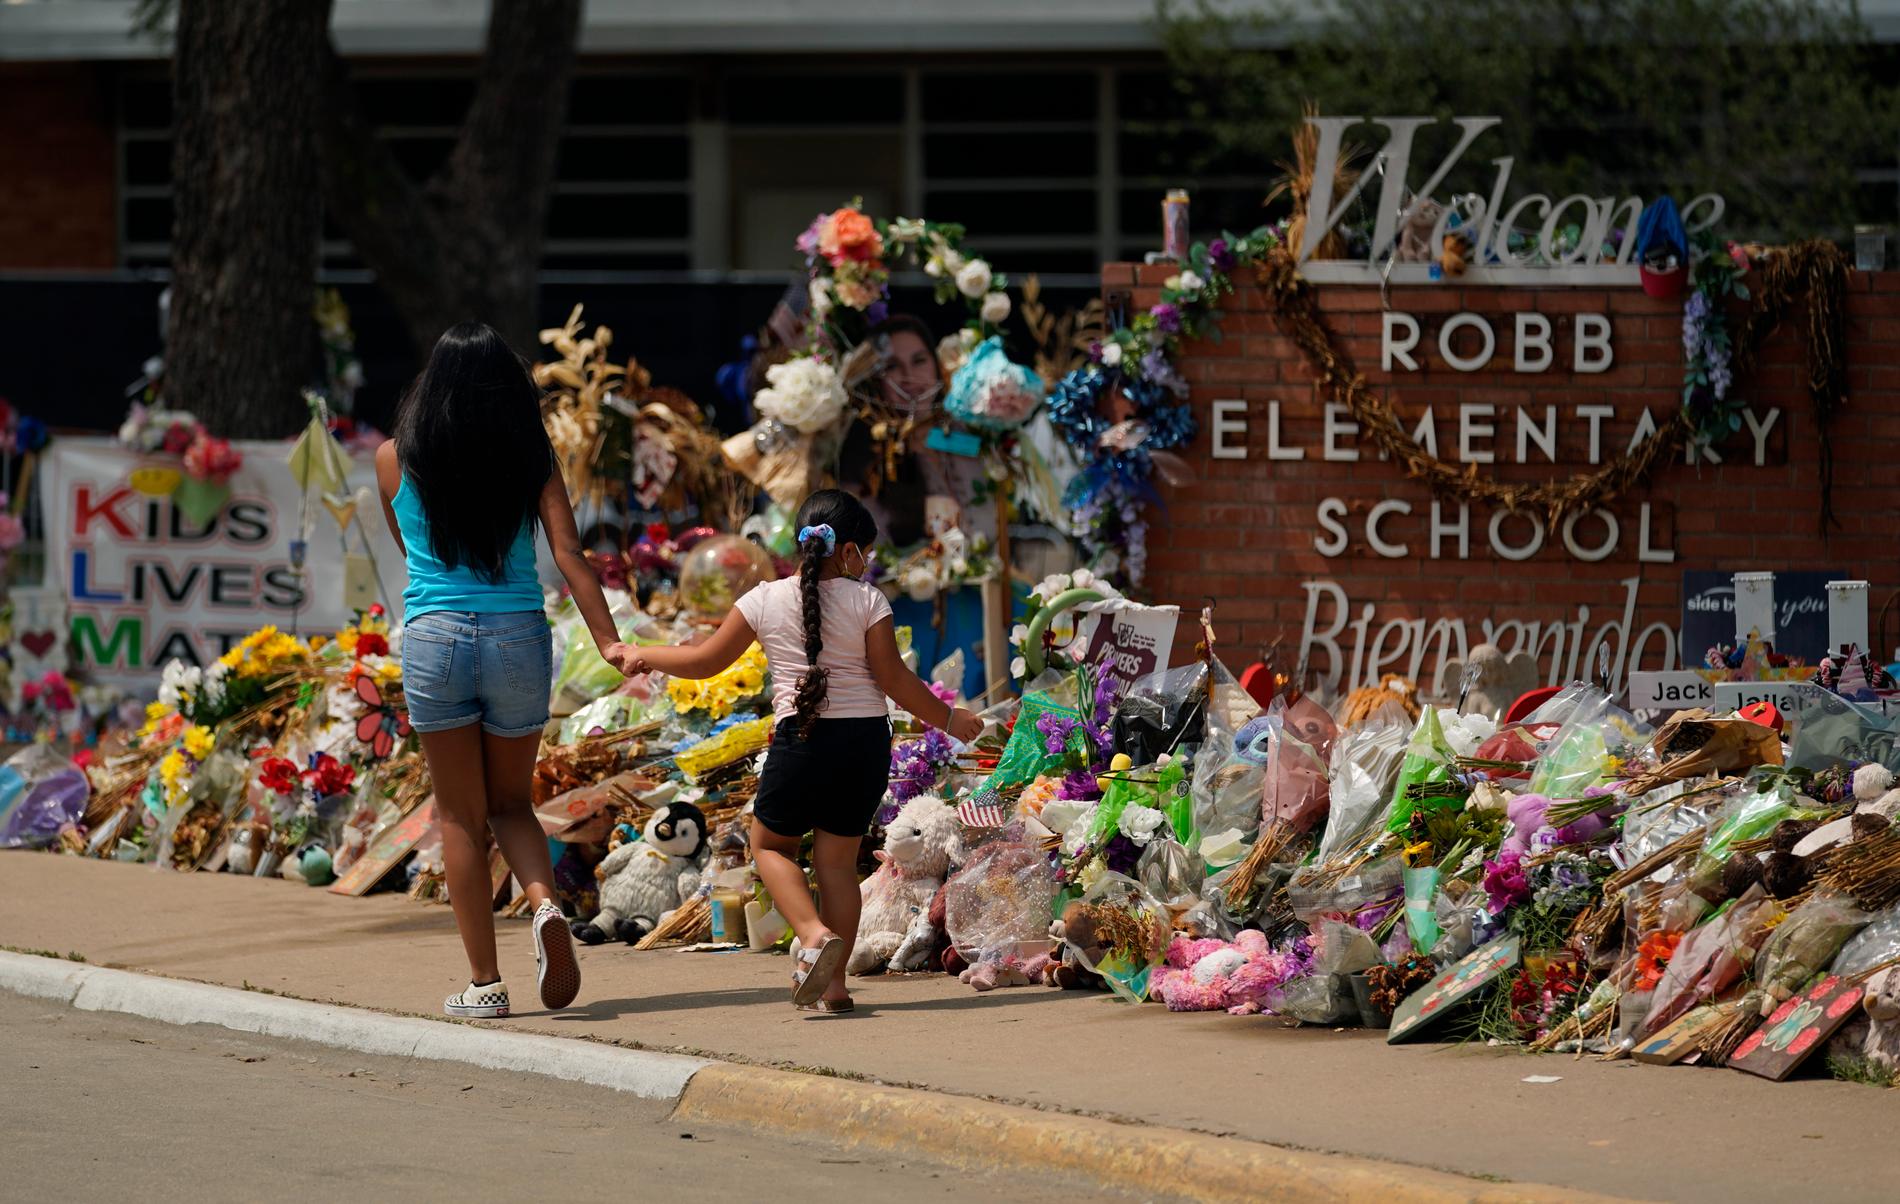 Totalt dog 21 personer, varav 19 barn och två lärare, när 18-årige Salvador Ramos den 24 maj klev in på Robb Elementary School och öppnade eld i två klassrum.